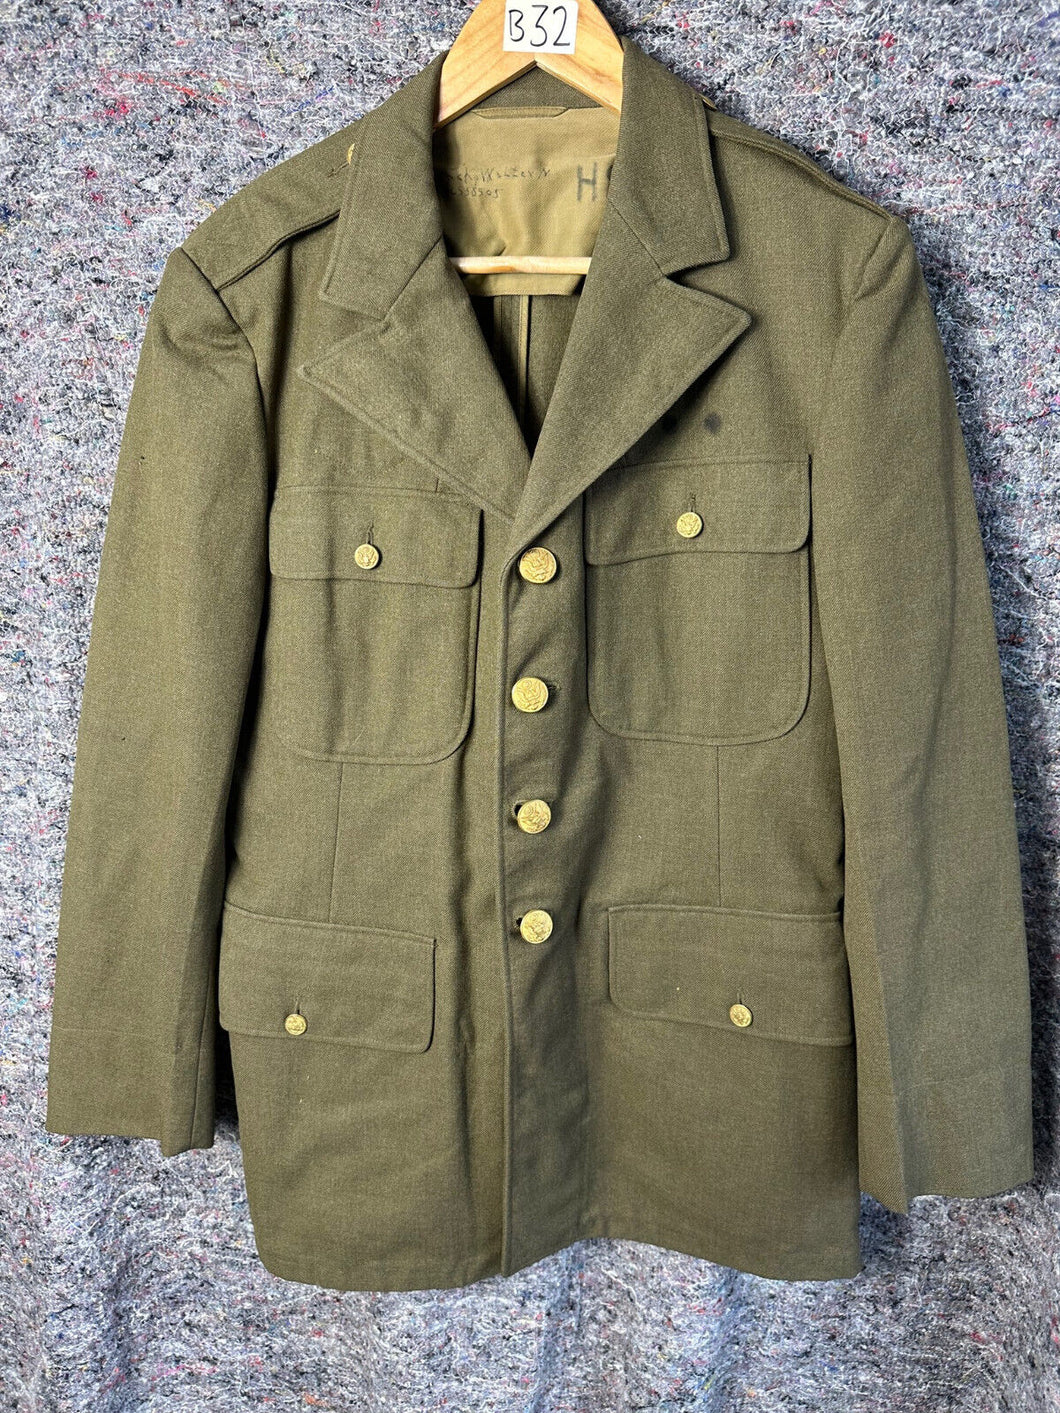 Original US Army WW2 Class A Uniform Jacket - 38